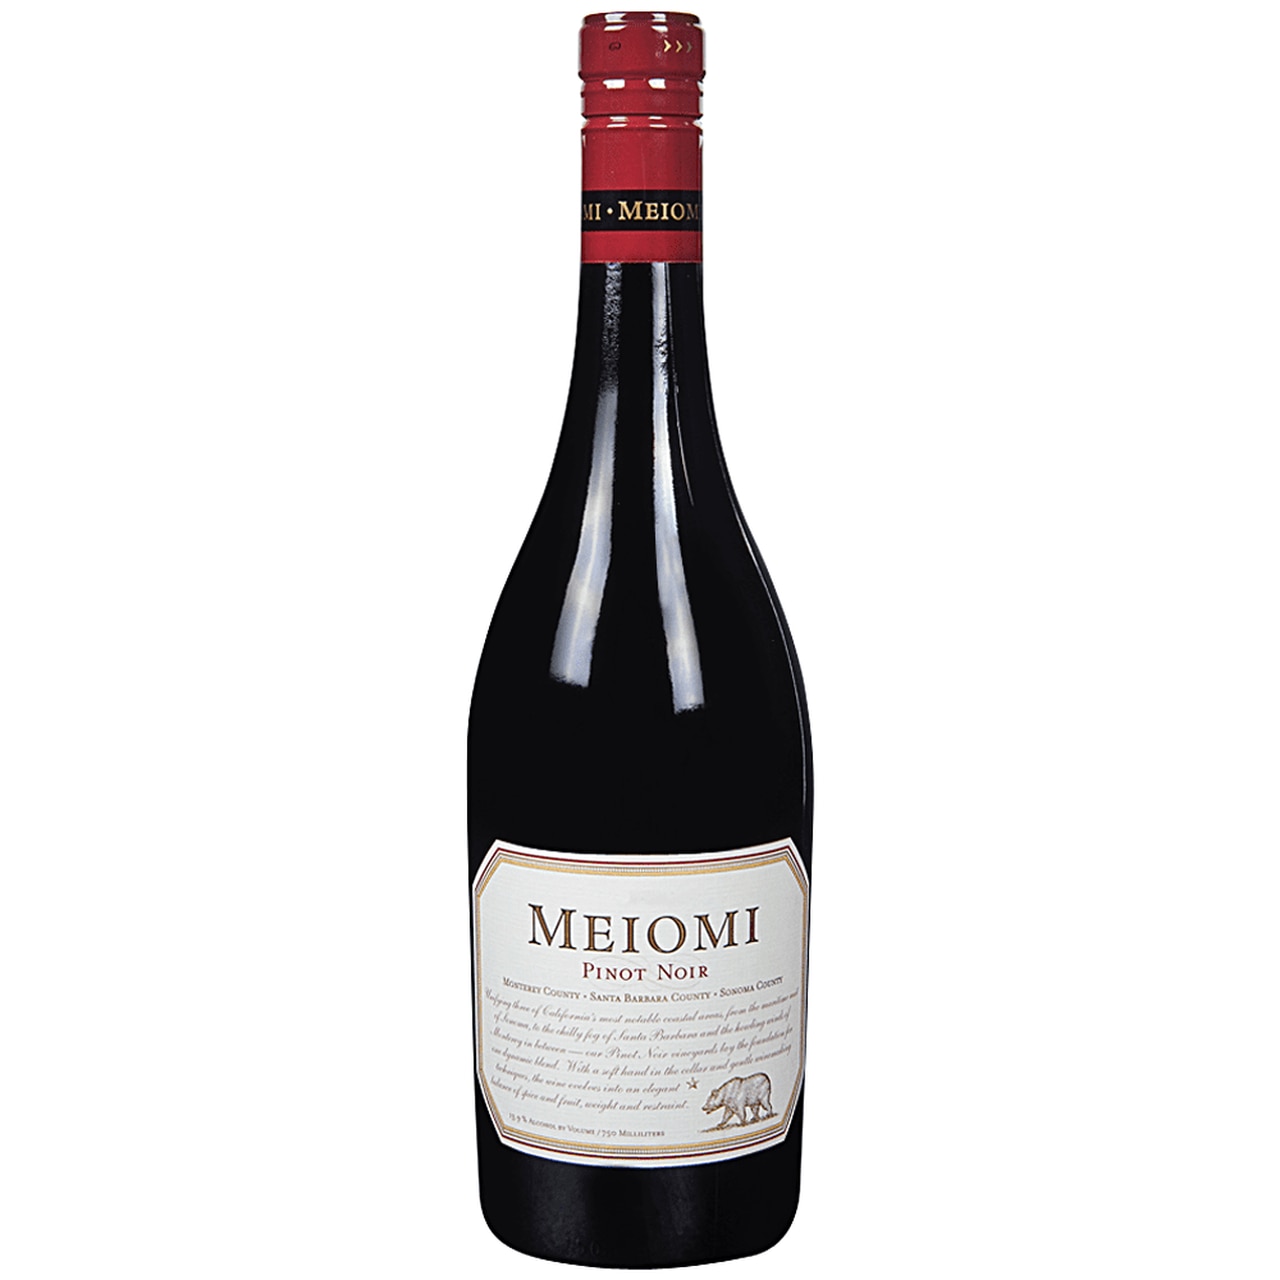 images/wine/Red Wine/Meiomi Pinot Noir.jpg